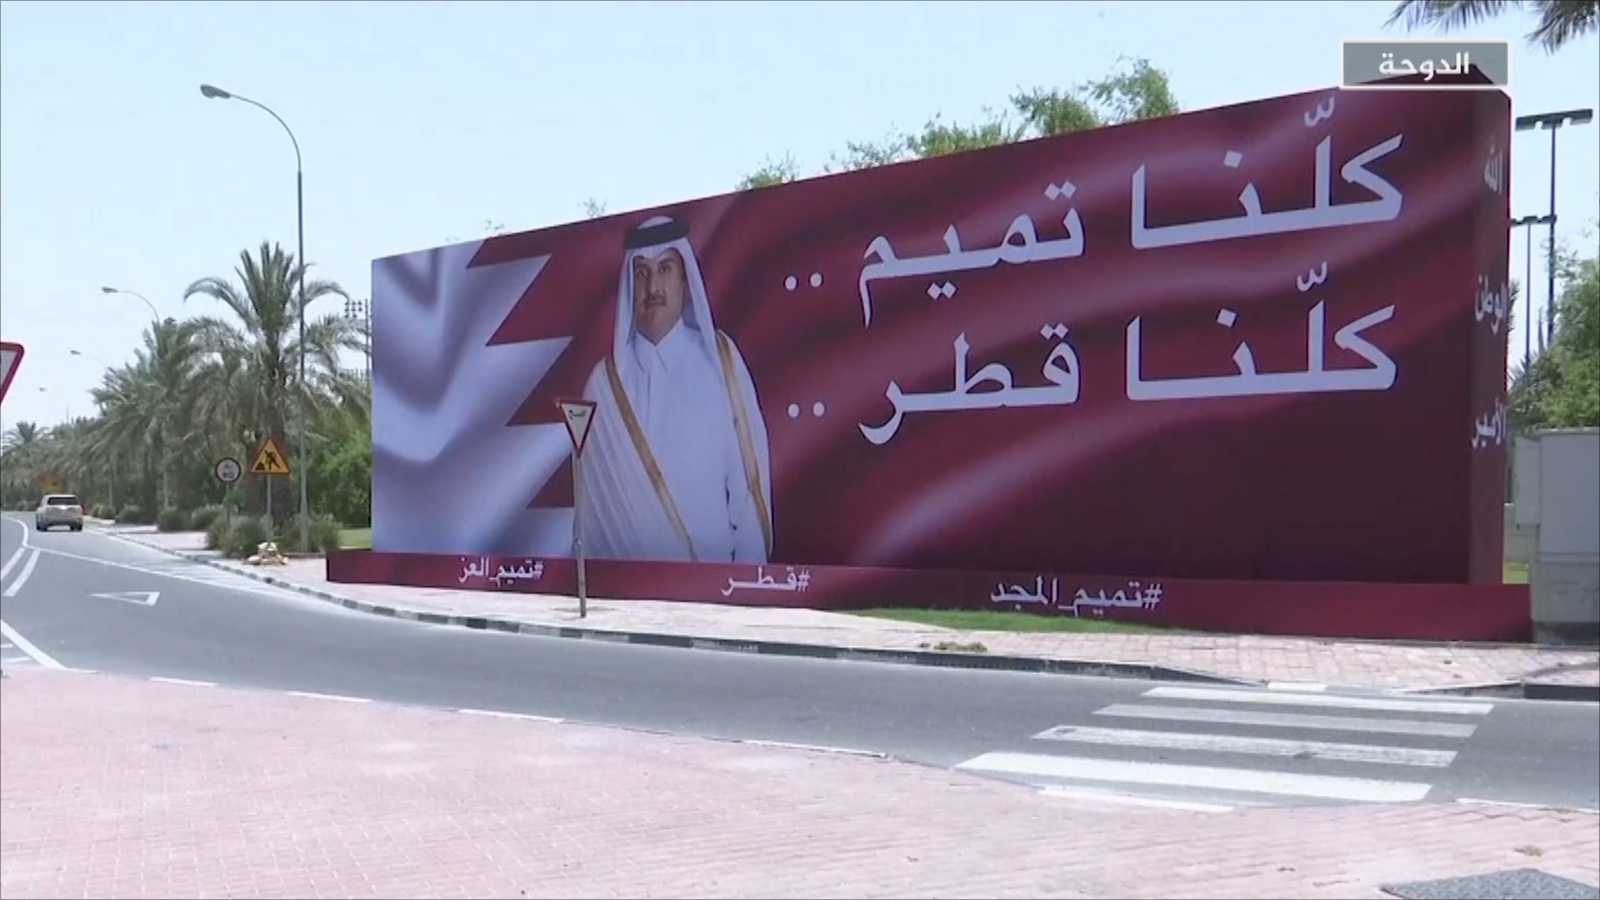 ‪قطر تجاوزت أزمة الحصار وتمكن اقتصادها من تحقيق نتائج إيجابية‬ (الجزيرة)